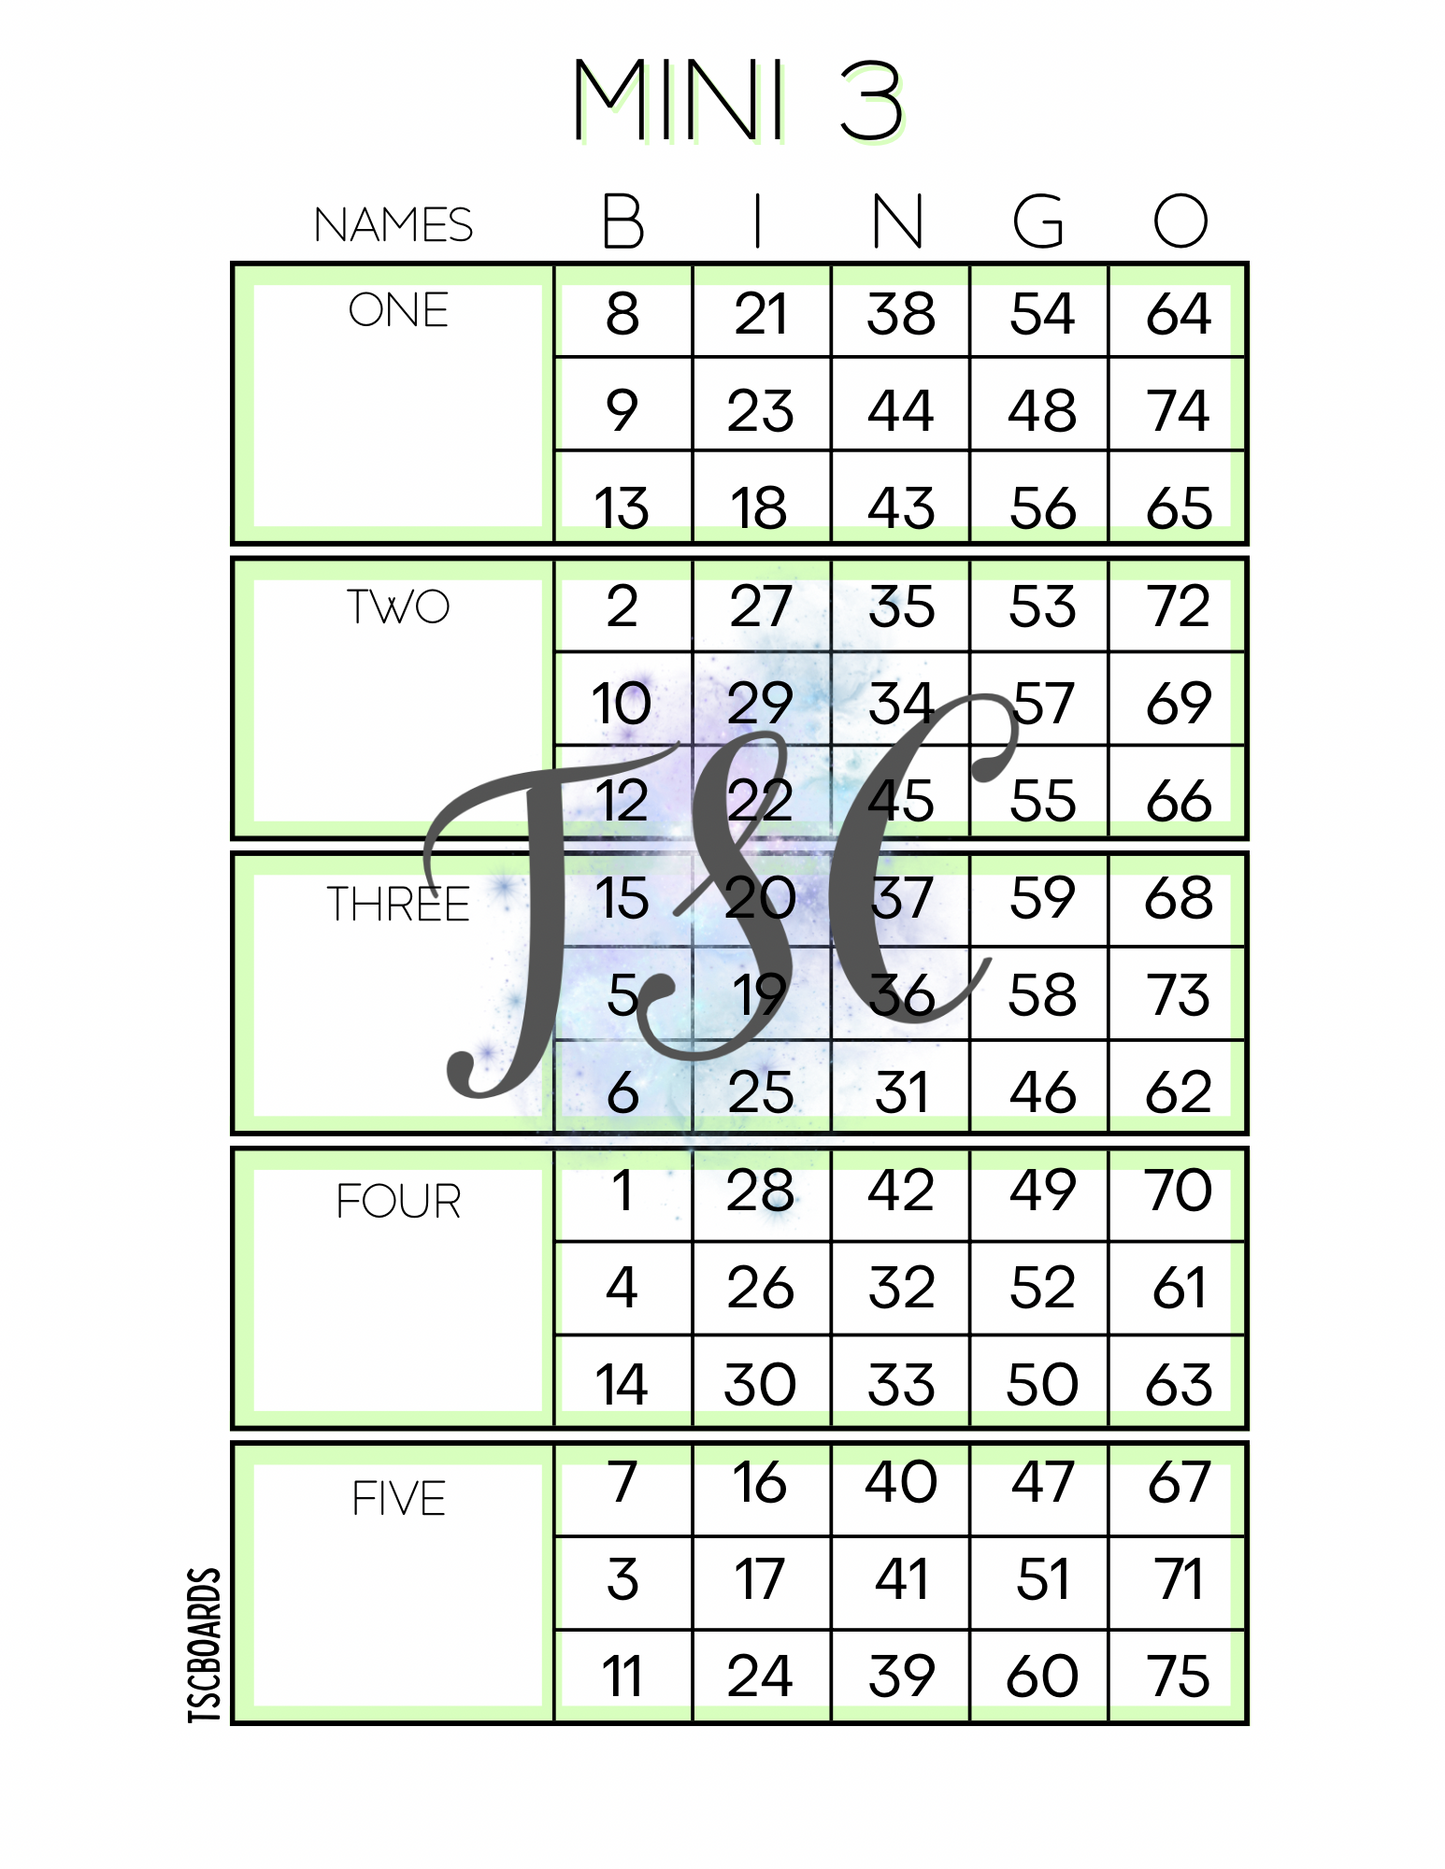 Mini 3 Green Block Bingo Board 1-75 Ball